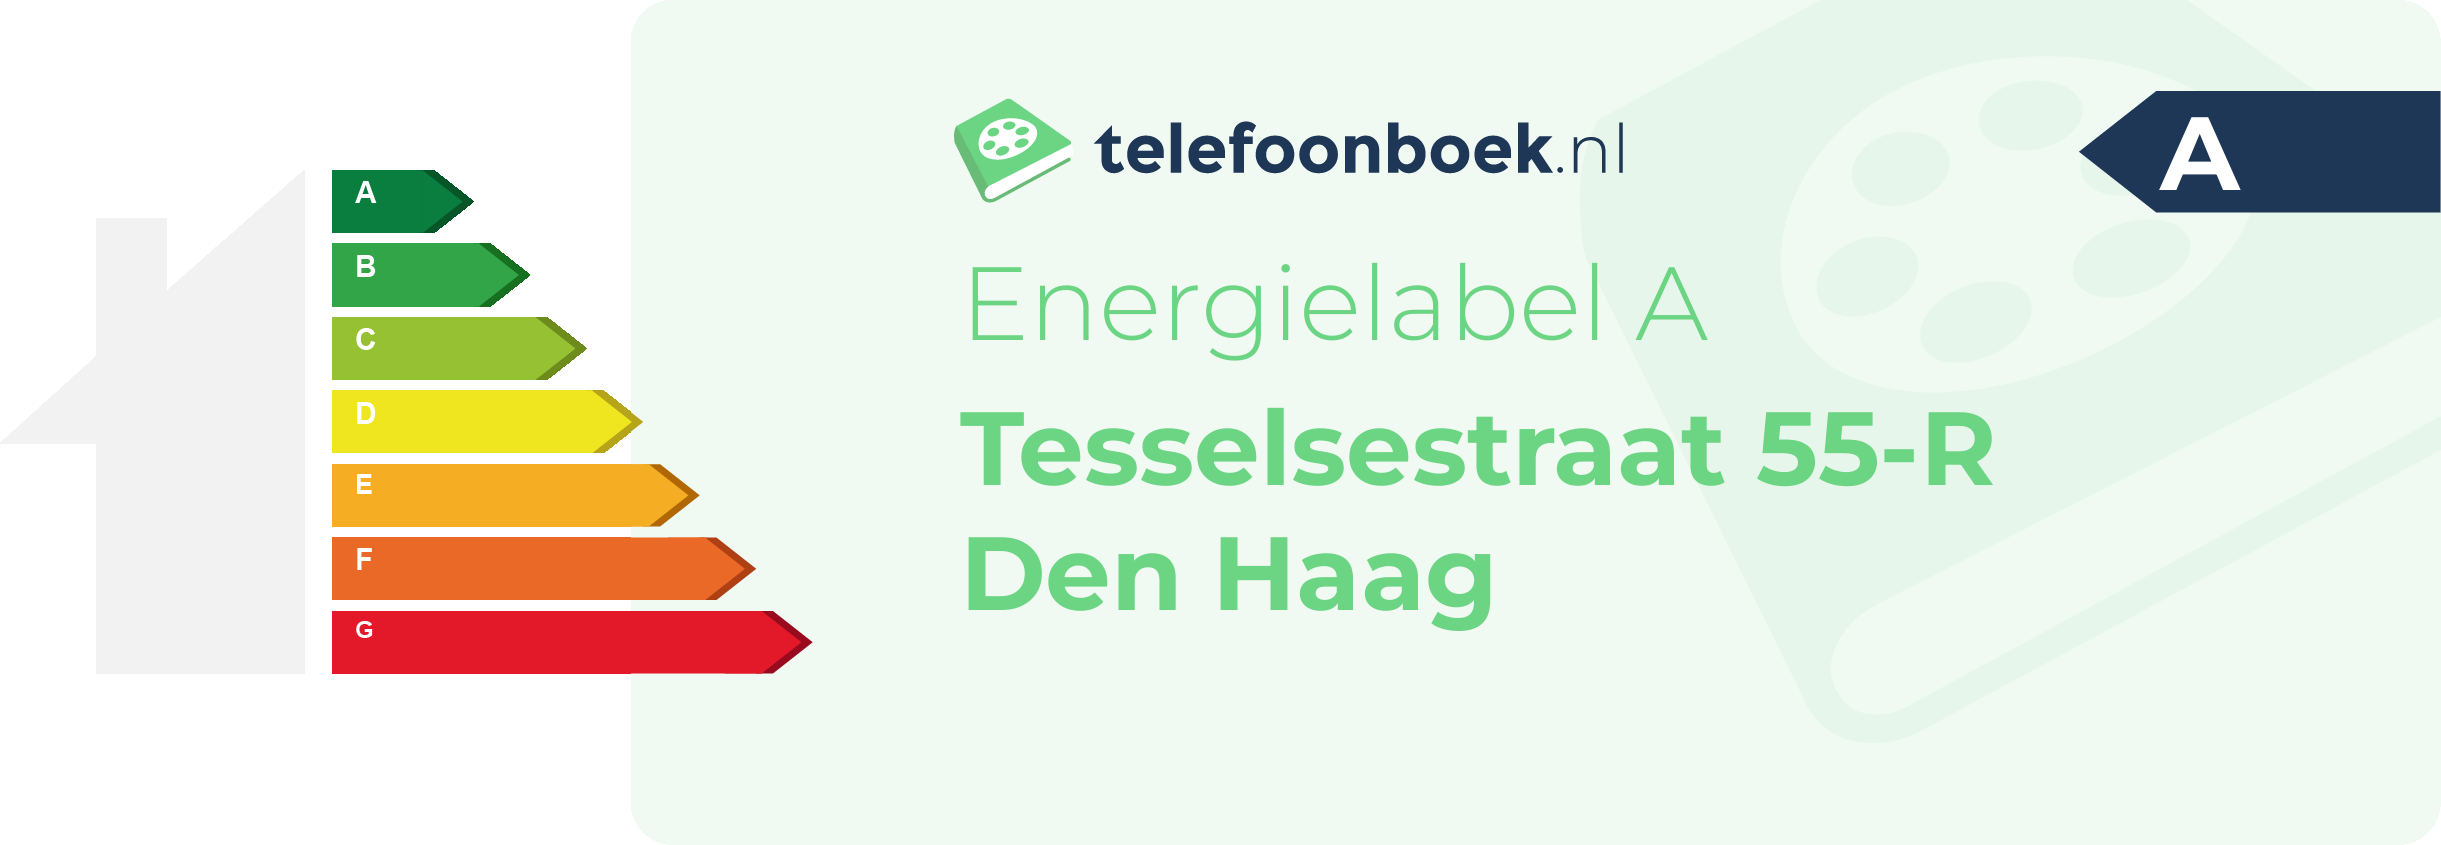 Energielabel Tesselsestraat 55-R Den Haag